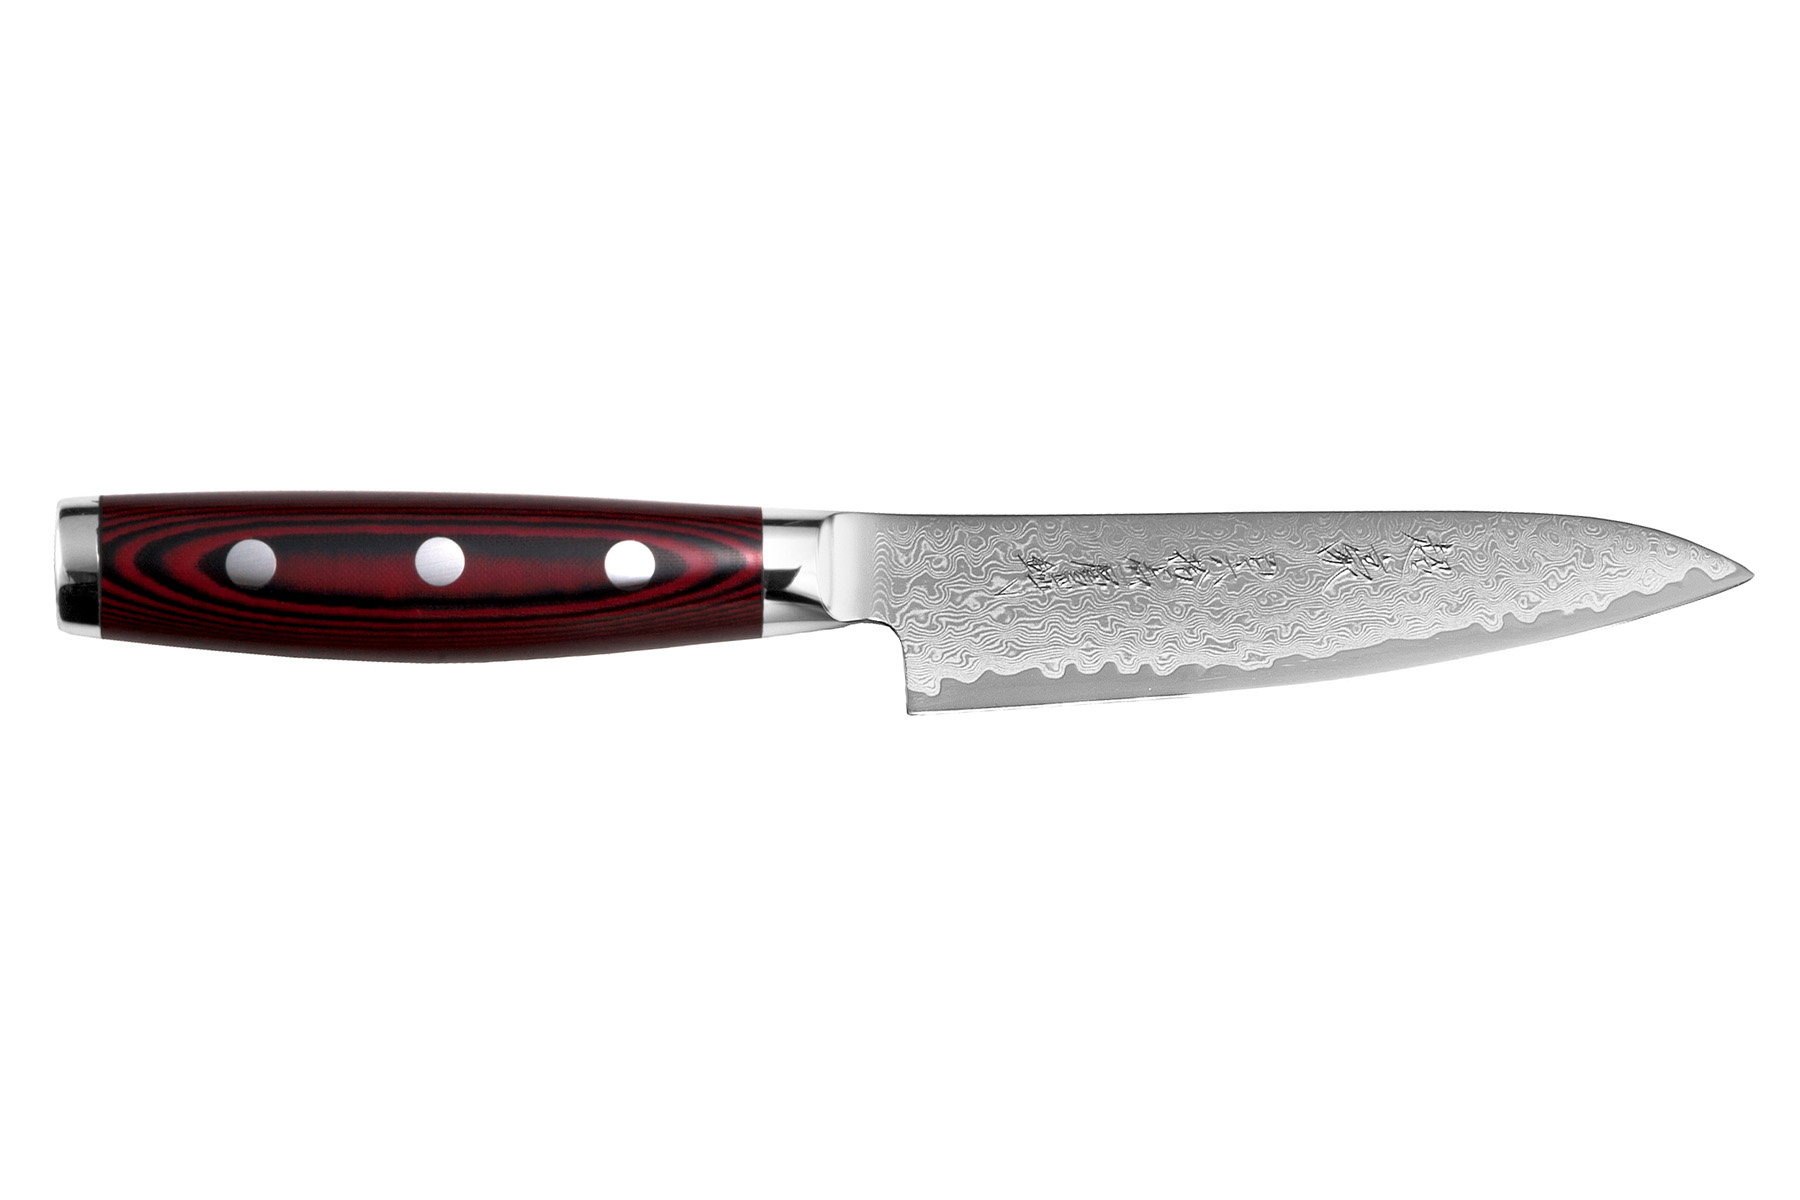 Couteau à office 8 cm avec éplucheur en céramique